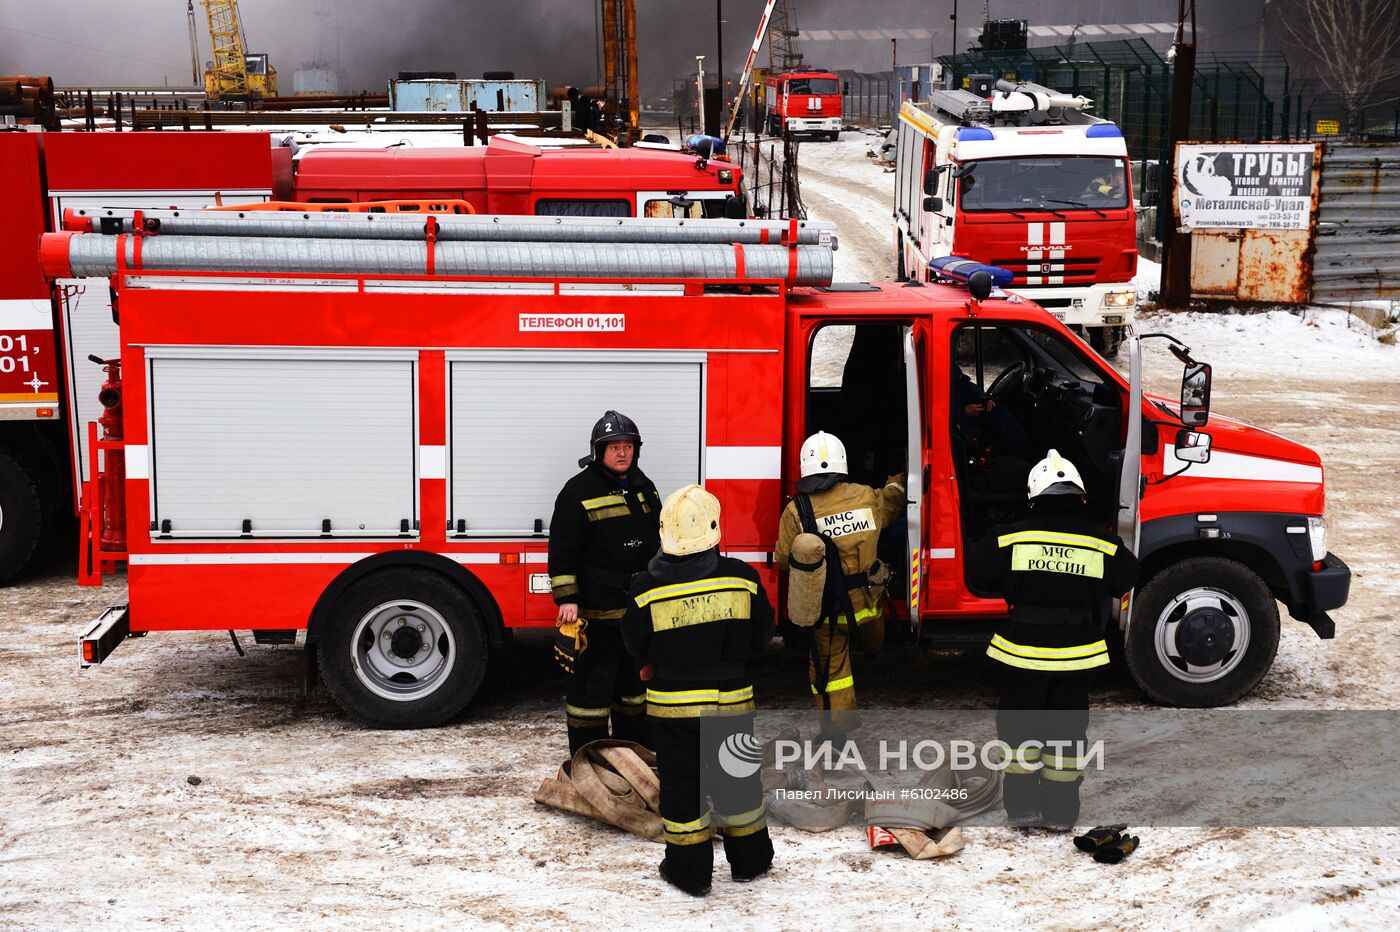 Пожар на заводе лакокрасочных изделий в Екатеринбурге